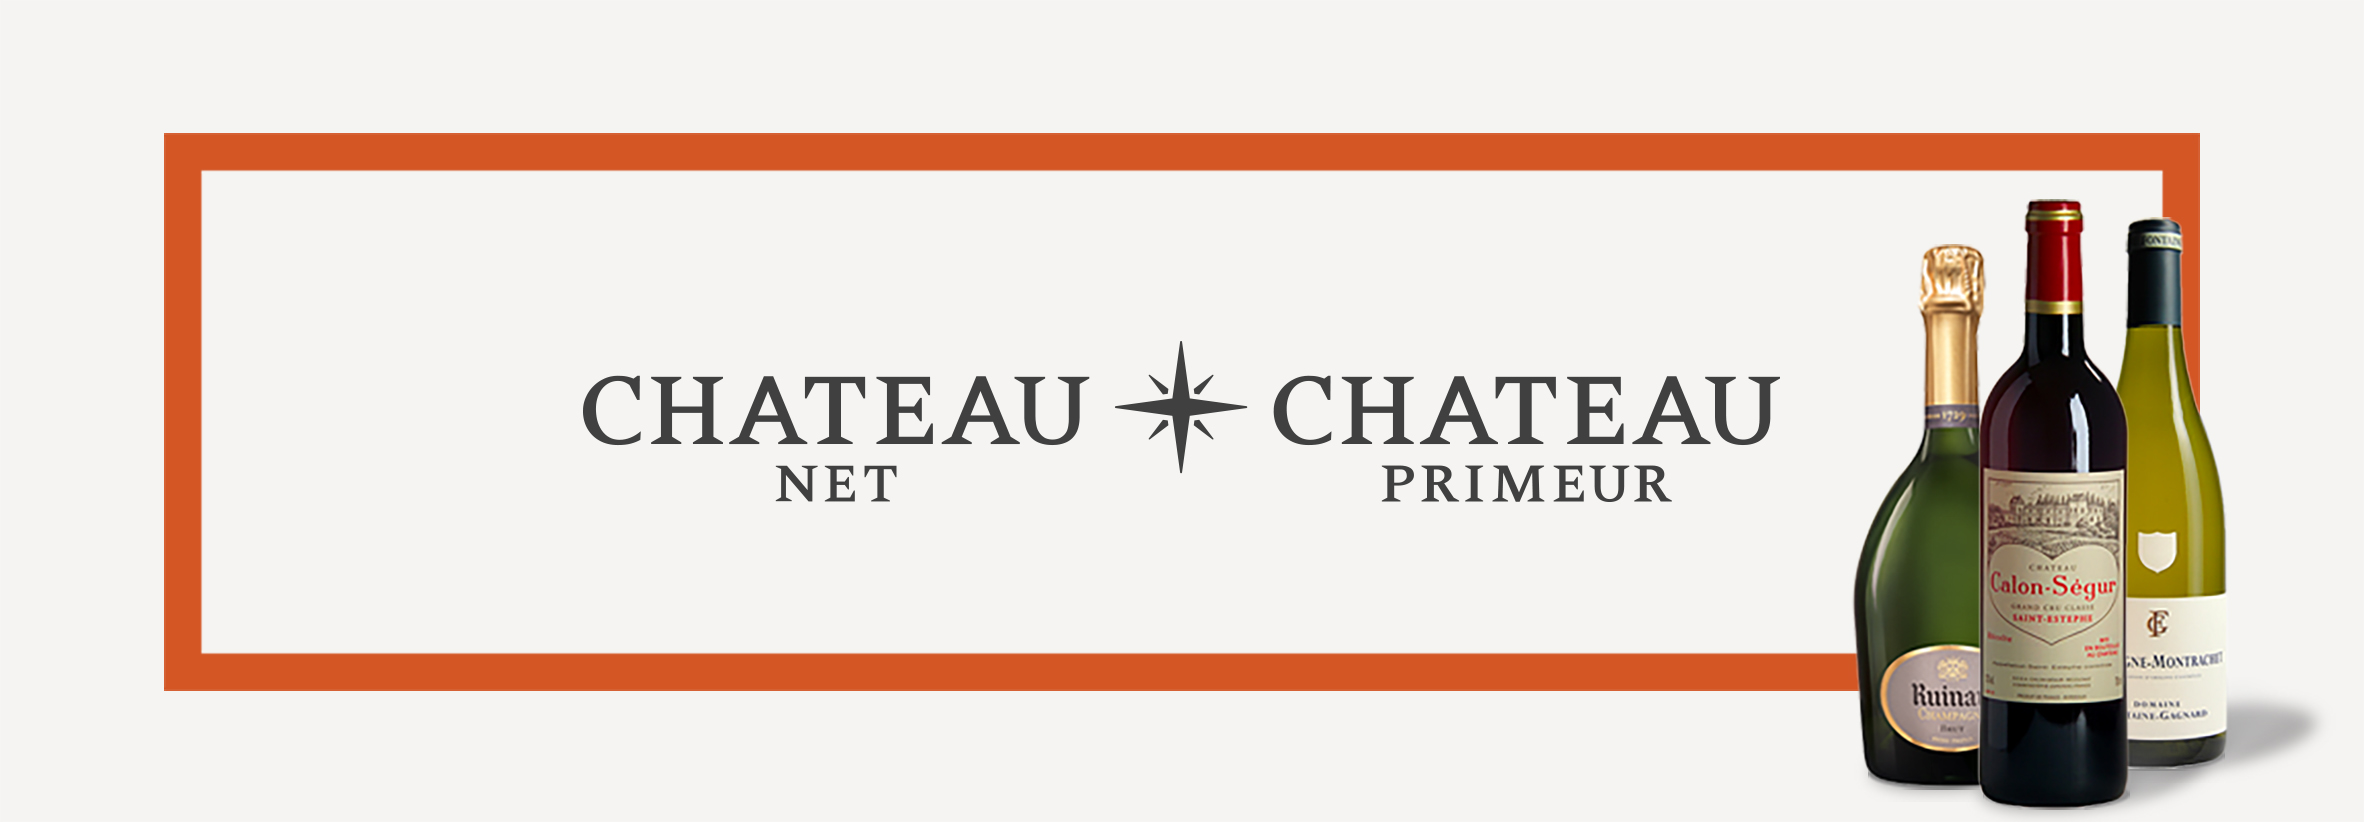 Chateau Net / Chateau Primeur